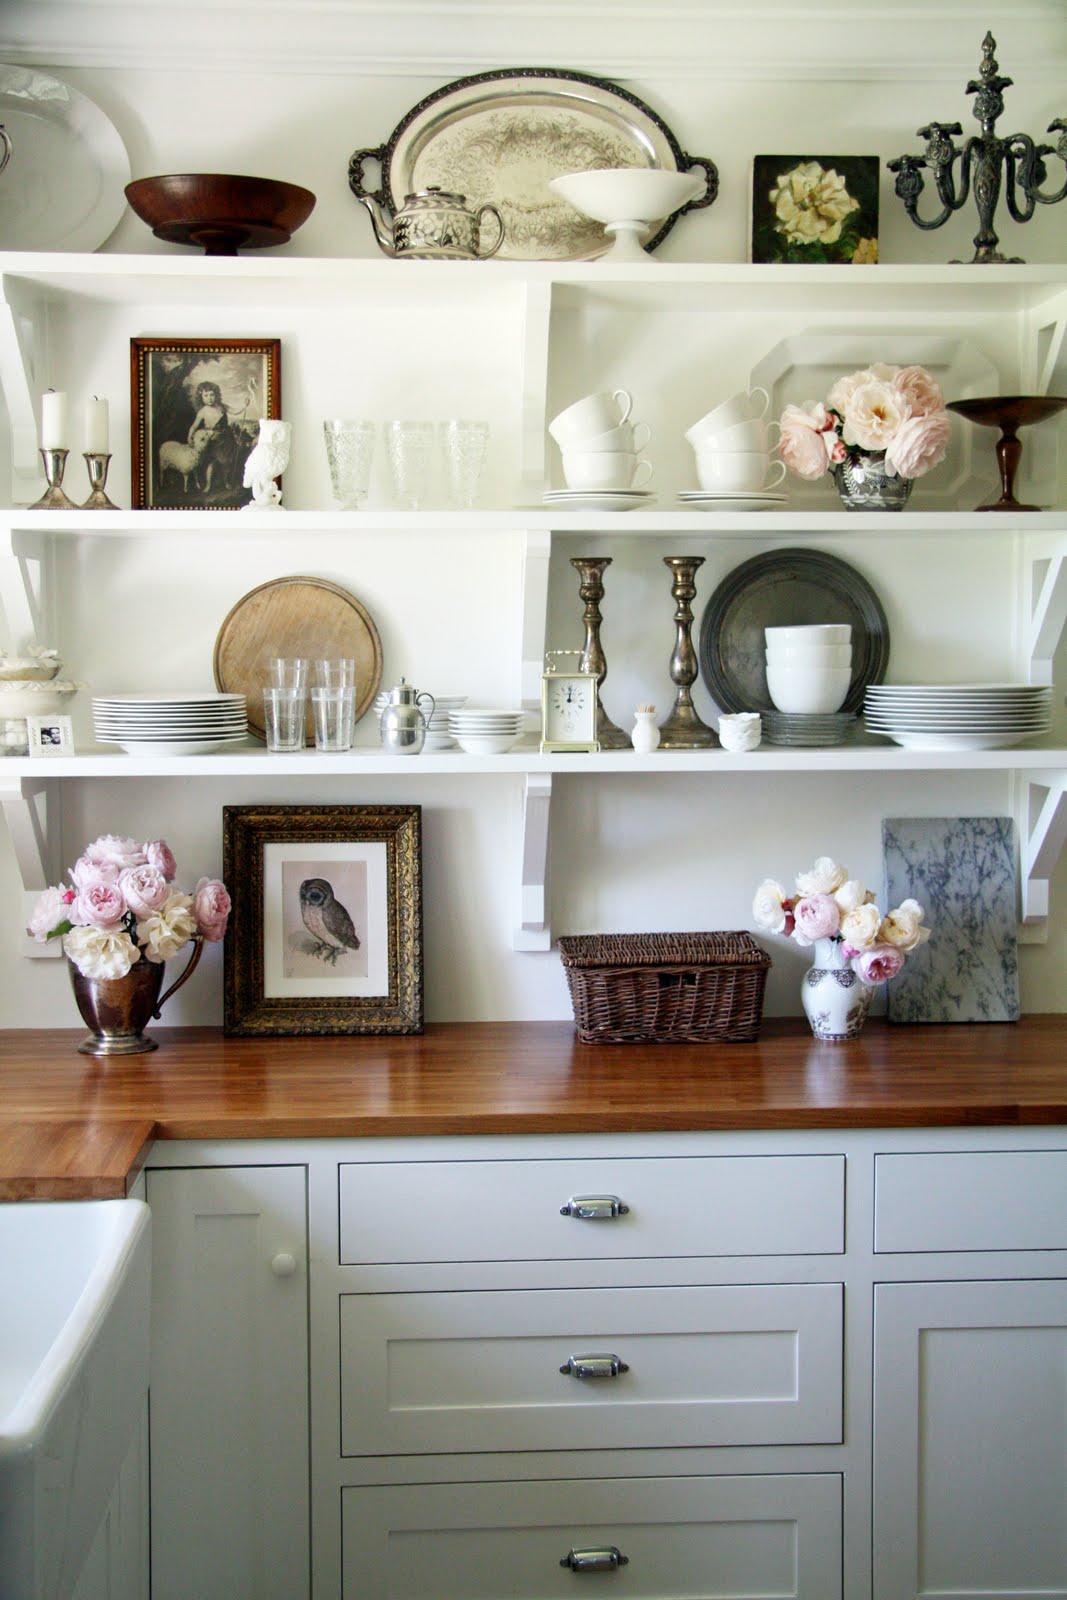 Friday Favorites: Stylish Kitchen Shelf Decor